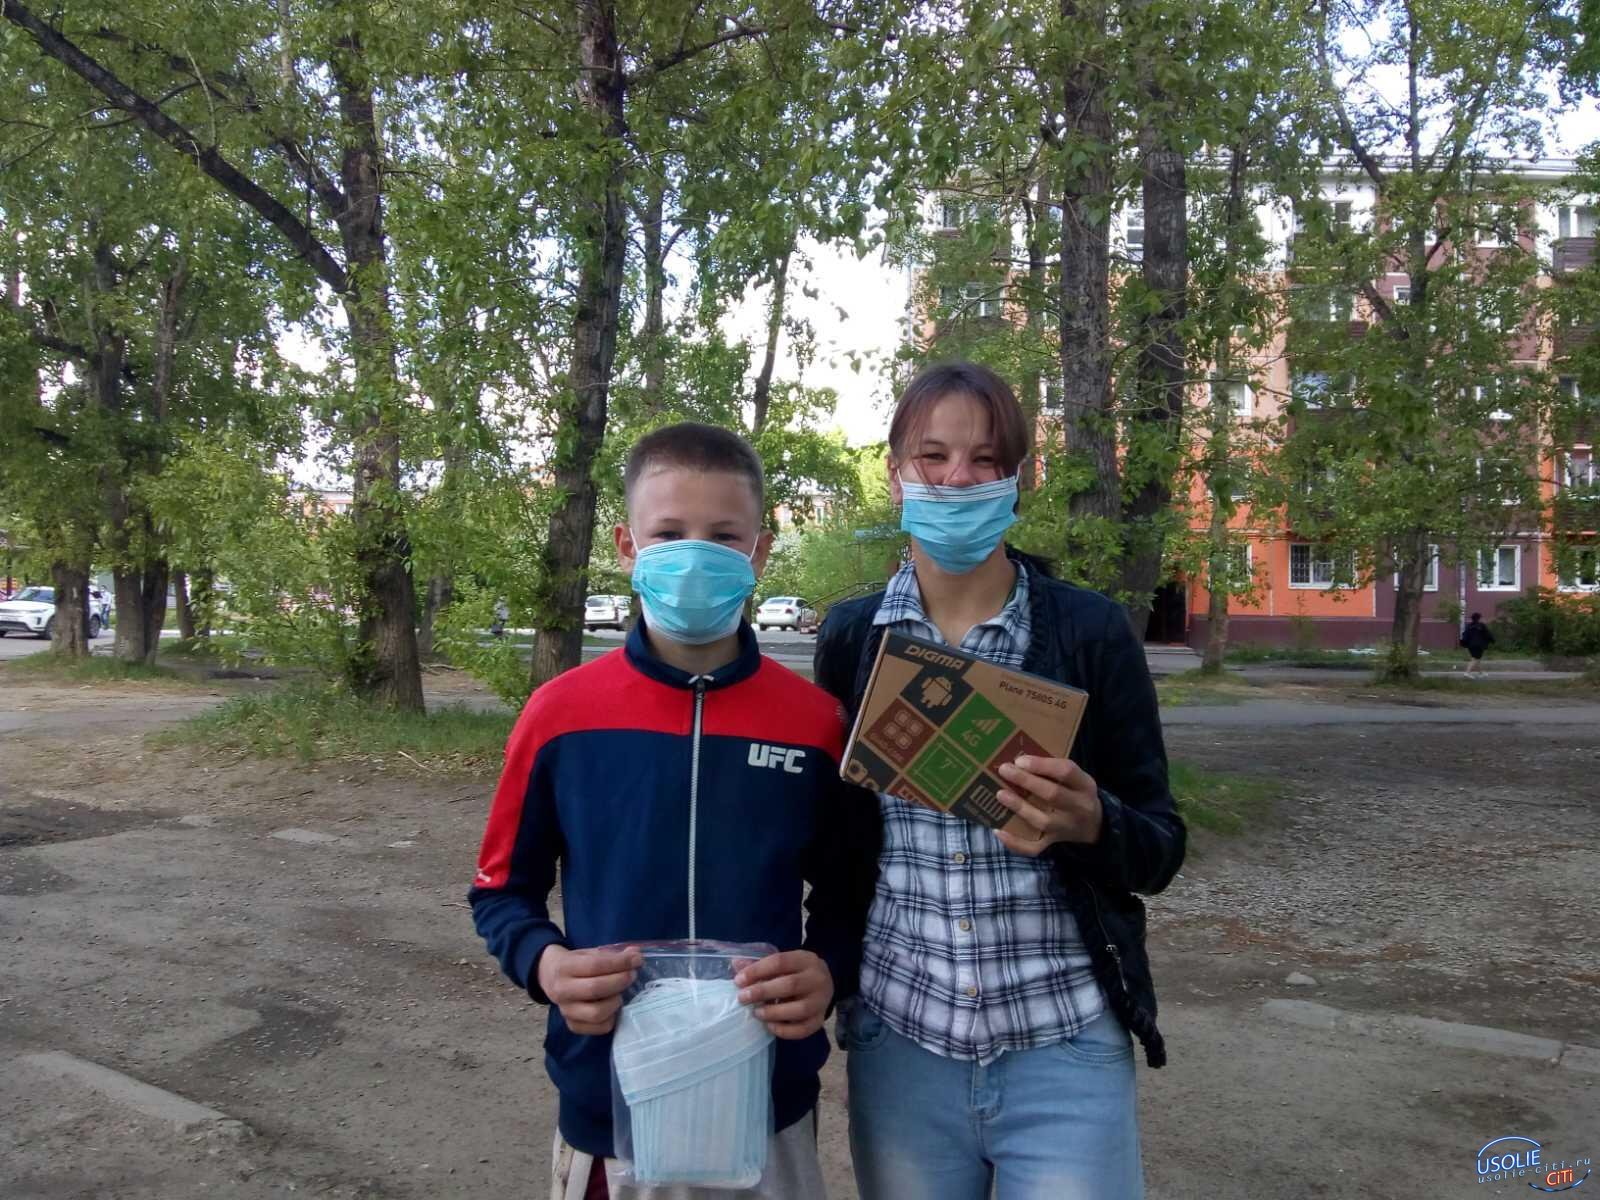 Супруги Тимченко подарили нуждающимся детям Усолья для обучения планшеты